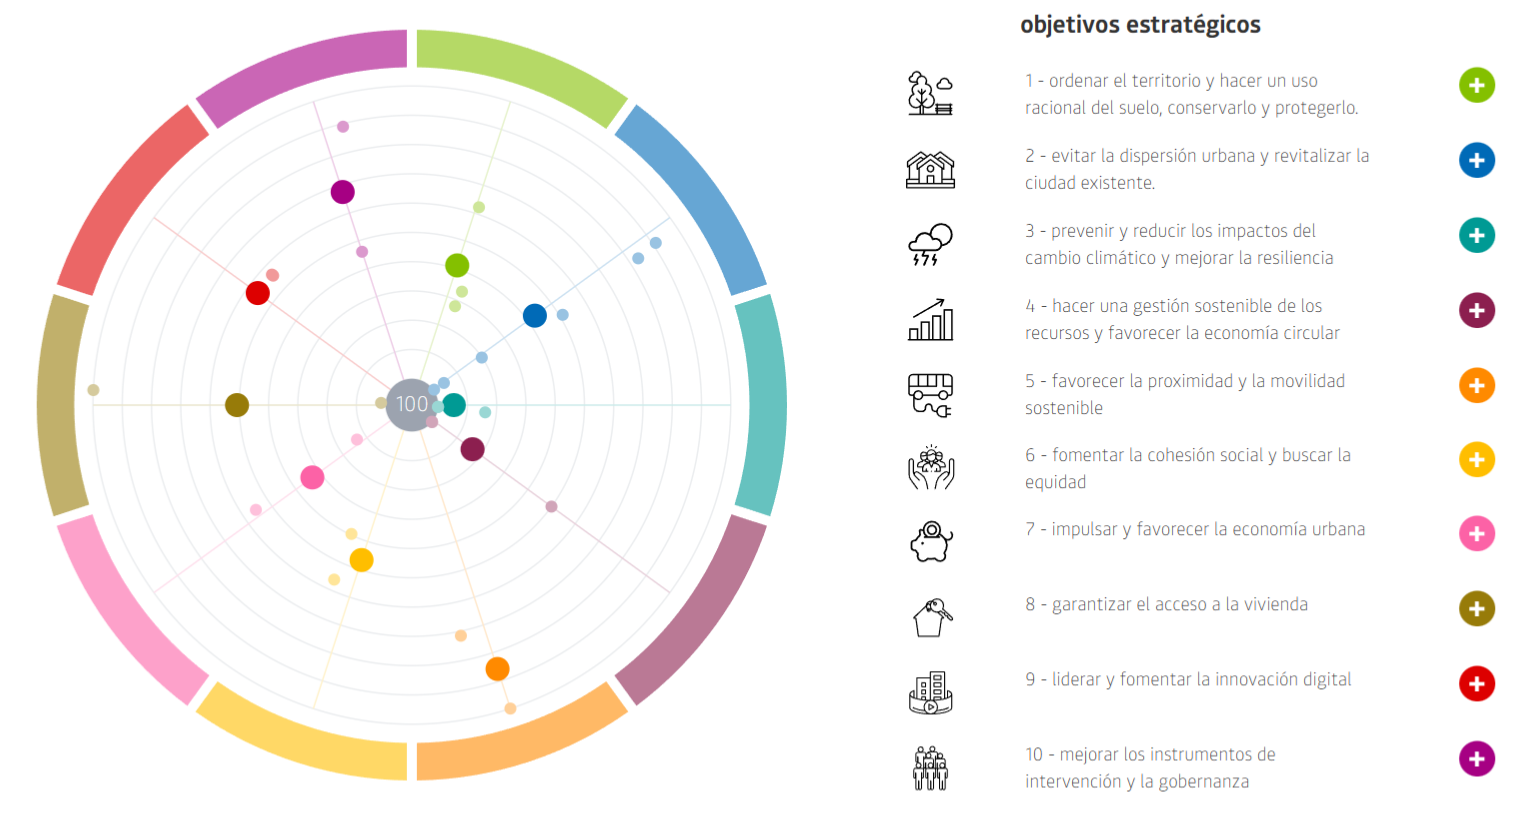 gráfico de los objetivos estratégicos de la Agenda Urbana de Logroño